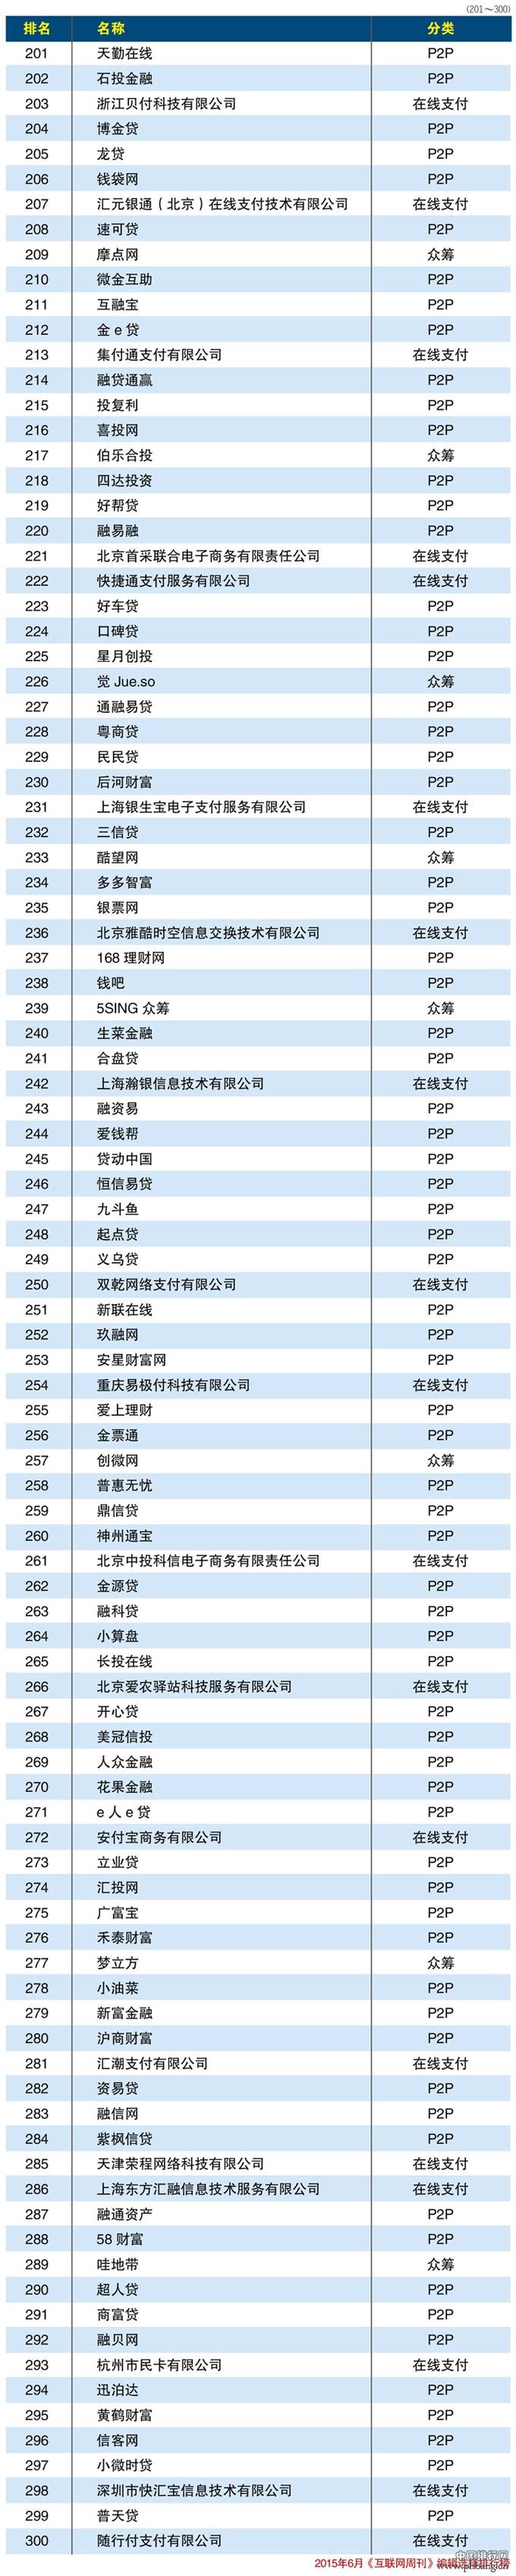 2015年中国互联网金融排行榜TOP300